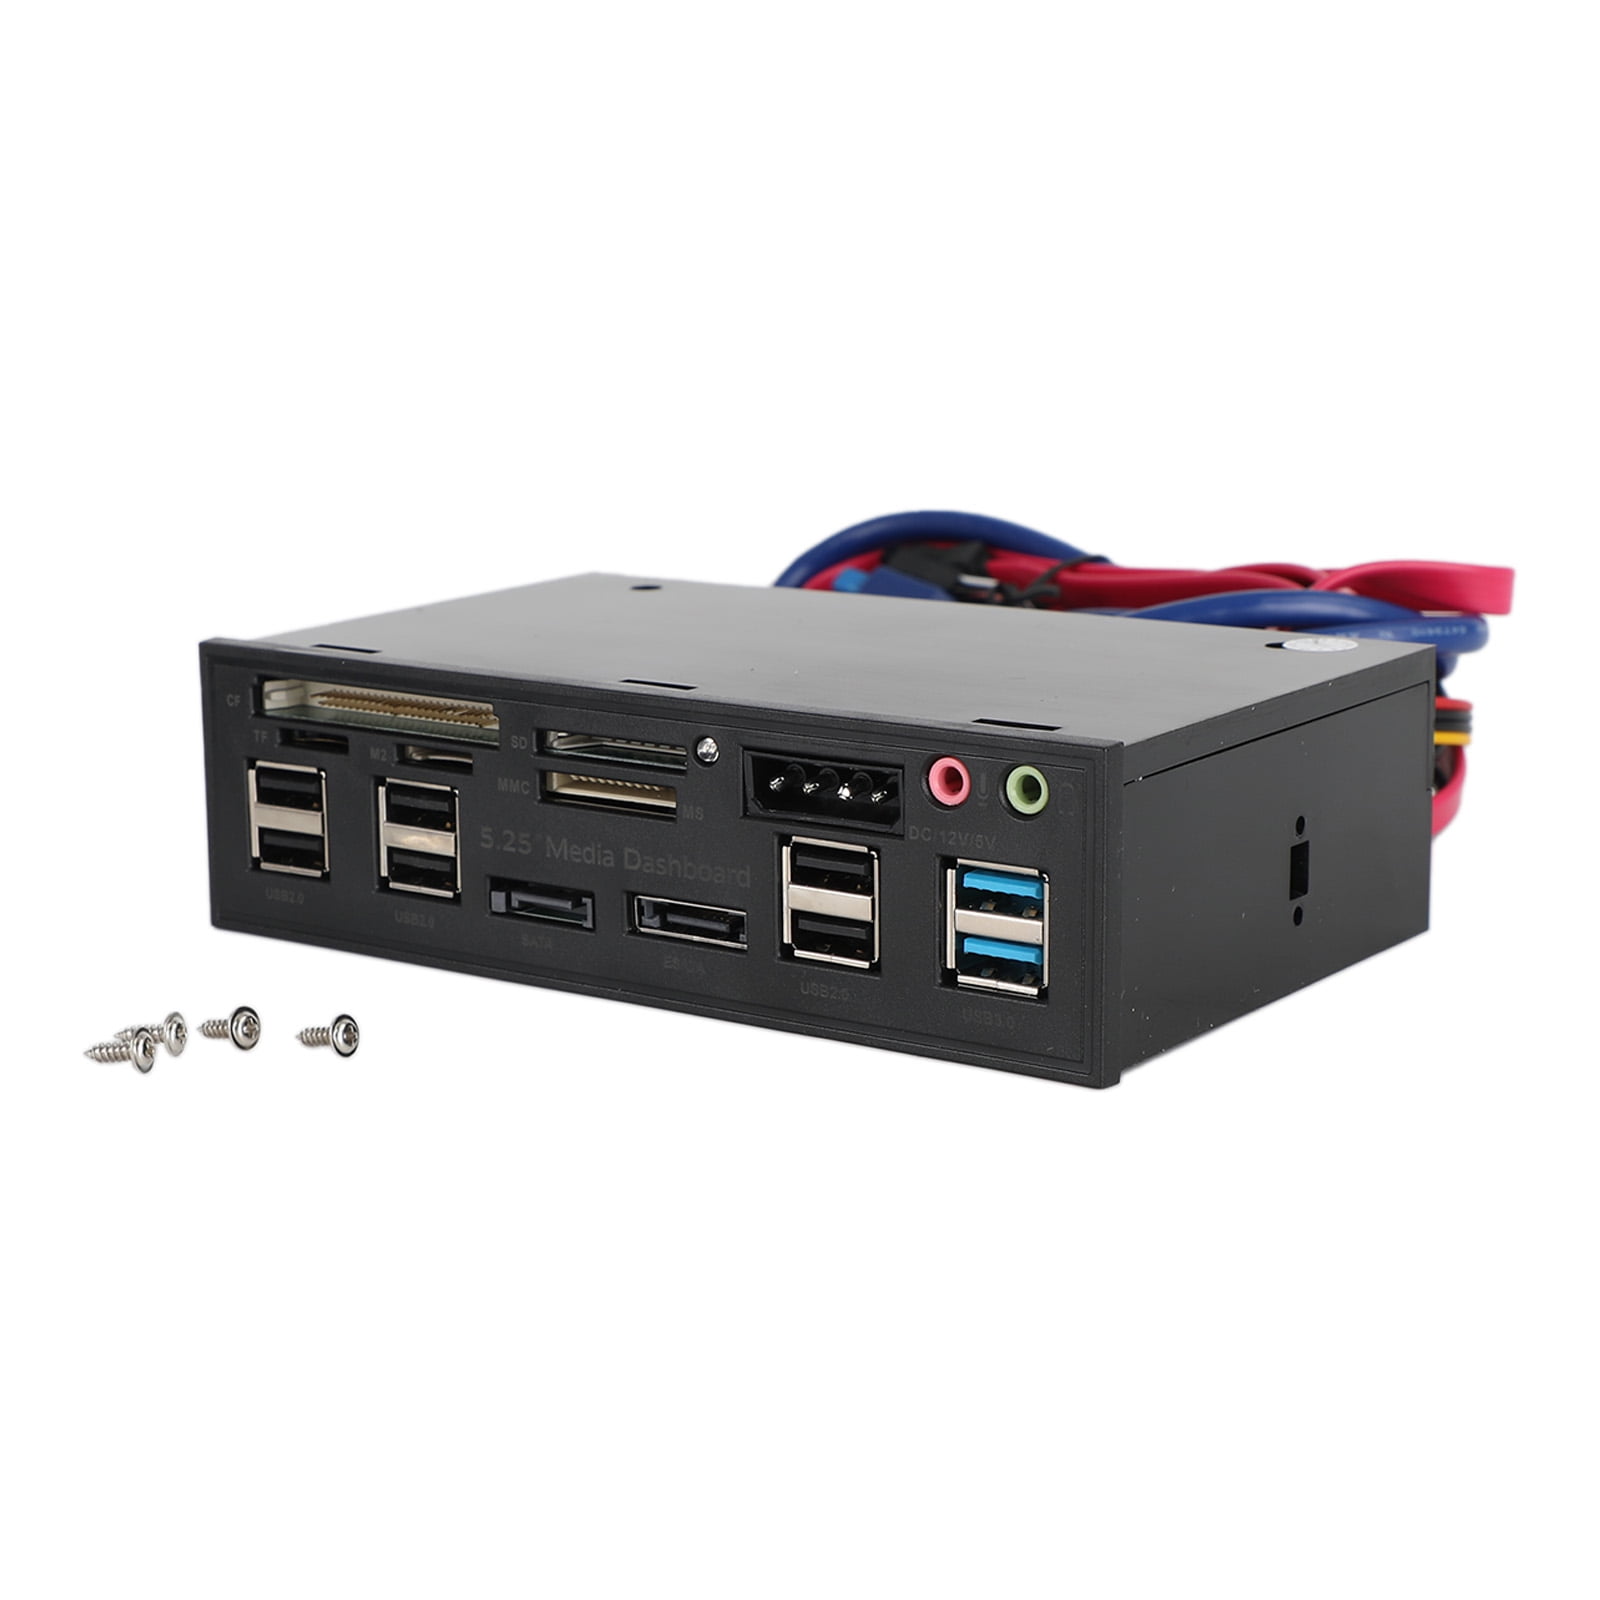 SITECOM Lecteur de carte d'identité USB 2.0 (MD-064) – MediaMarkt